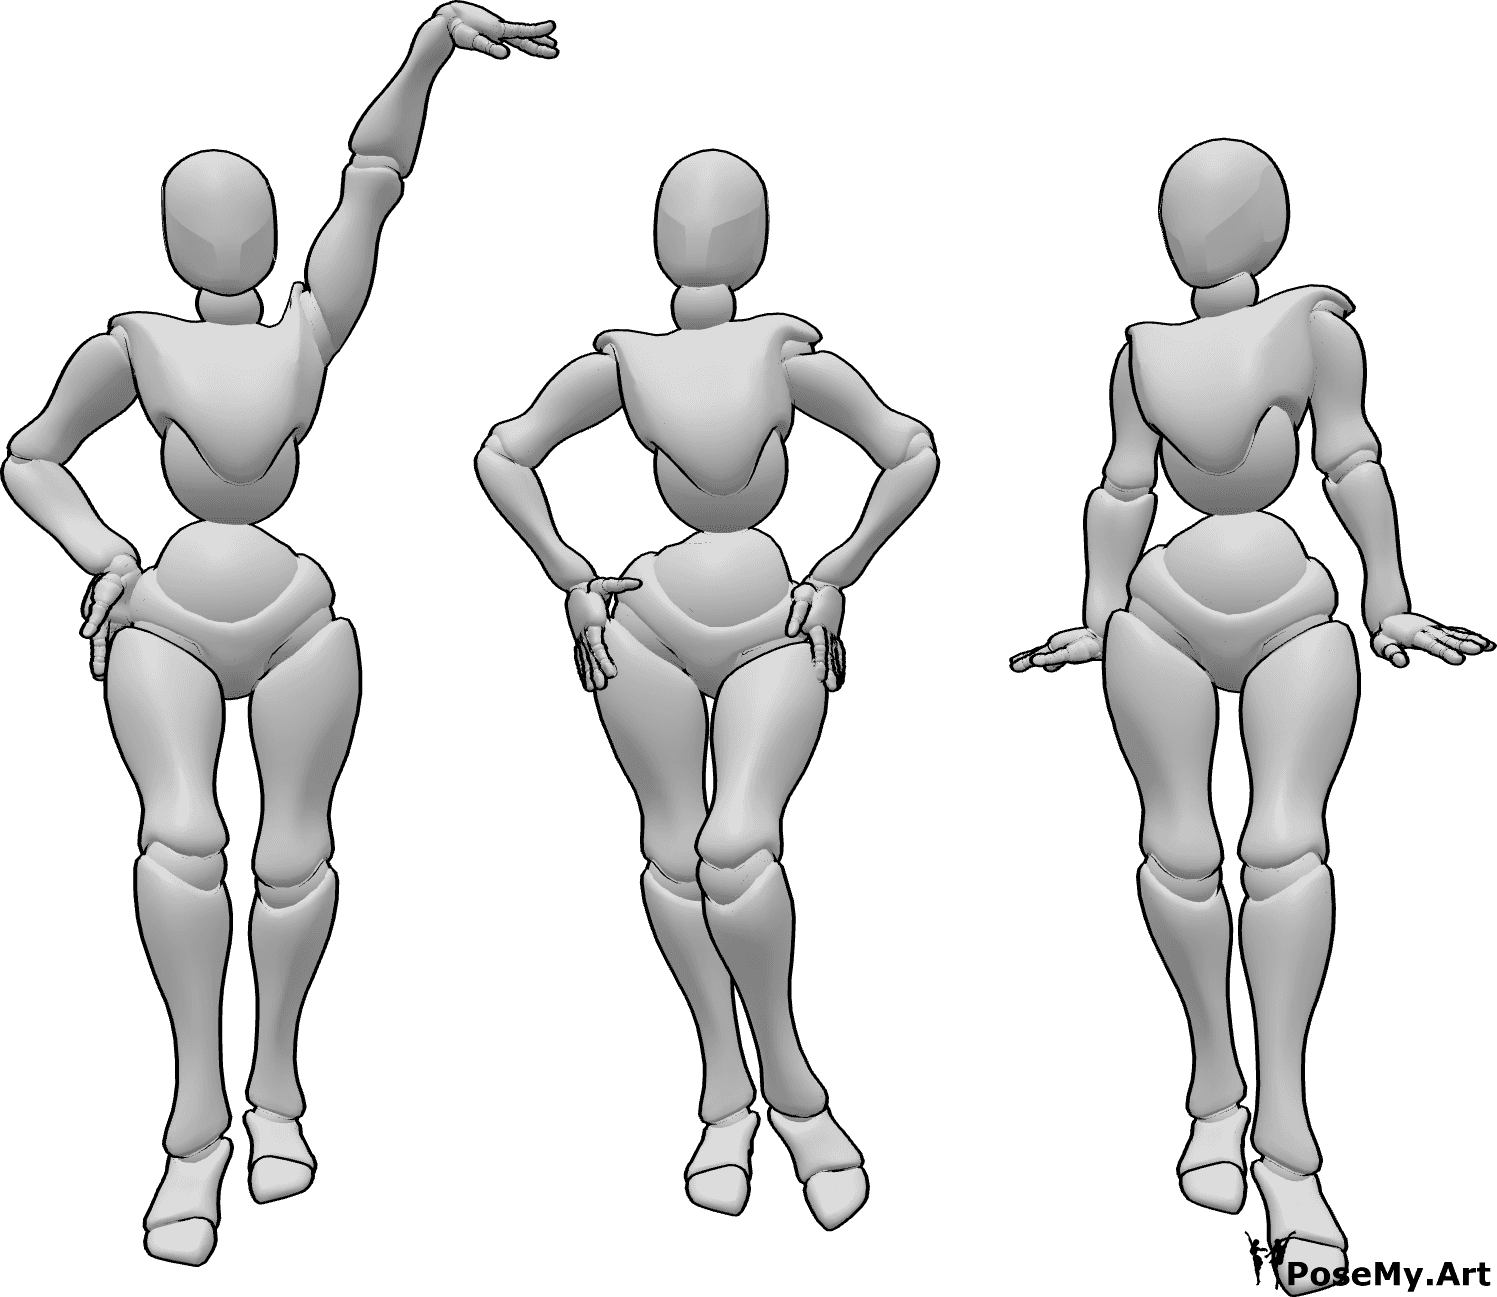 Posen-Referenz- Drei Frauen in stehender Pose - Drei weibliche Personen stehen und posieren wie Models